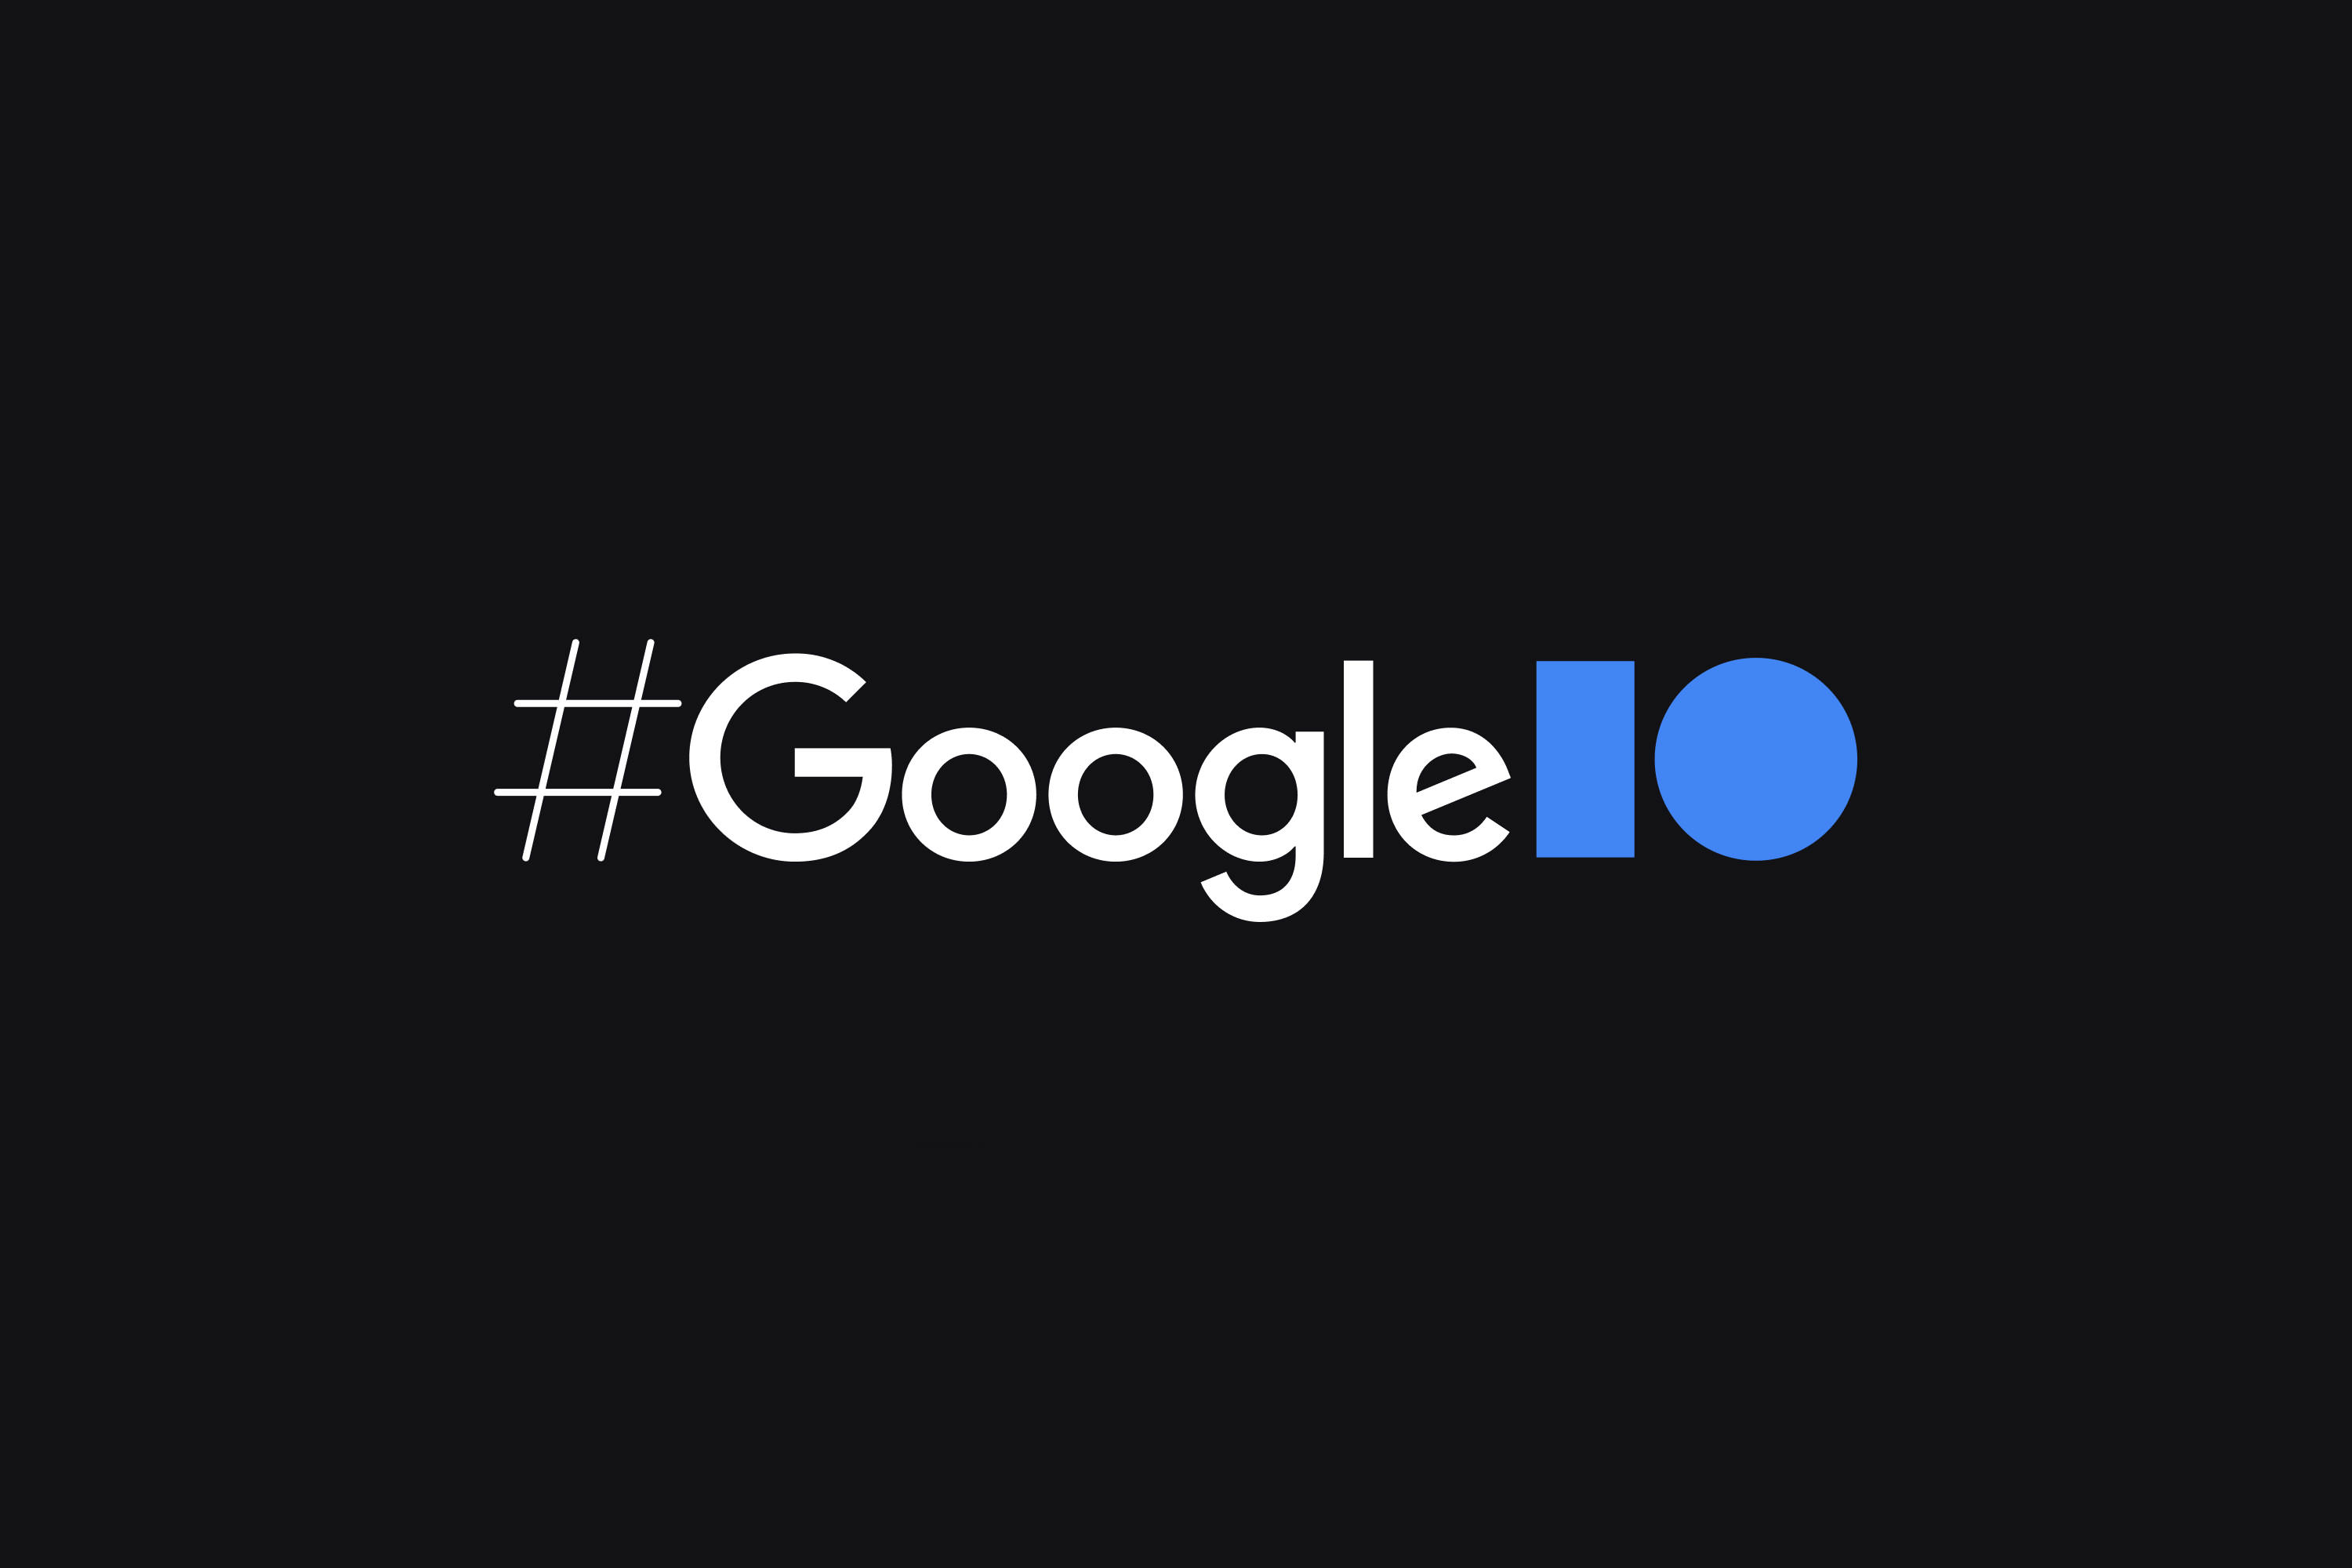 هر آنچه از کنفرانس Google I/O 2021 انتظار داریم